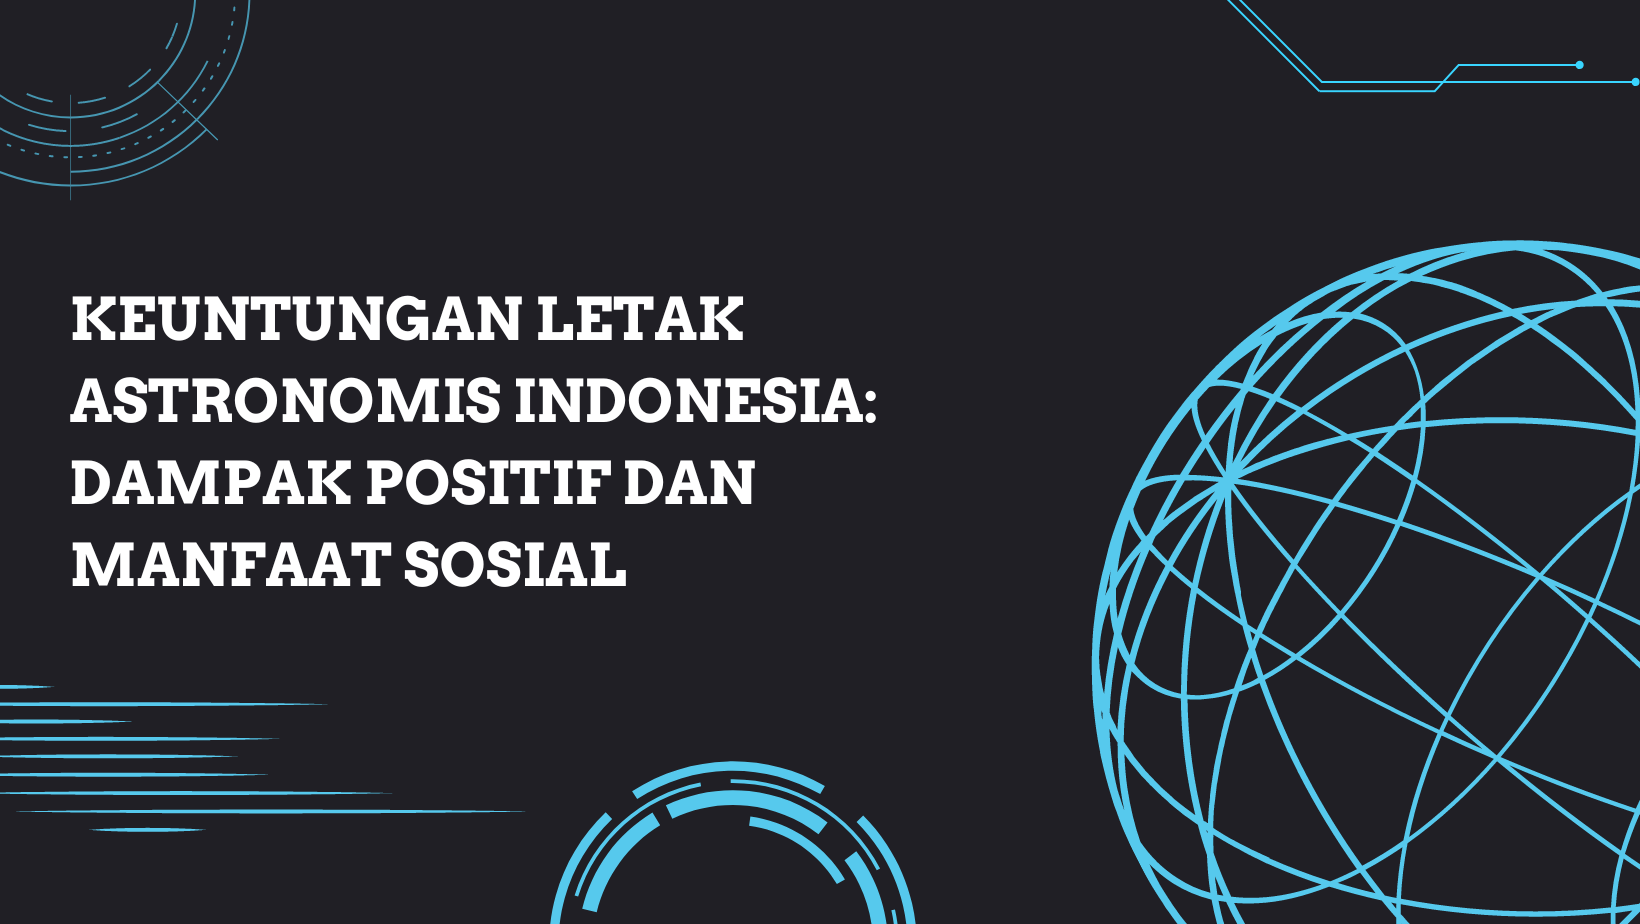 Keuntungan Letak Astronomis Indonesia: Dampak Positif dan Manfaat Sosial